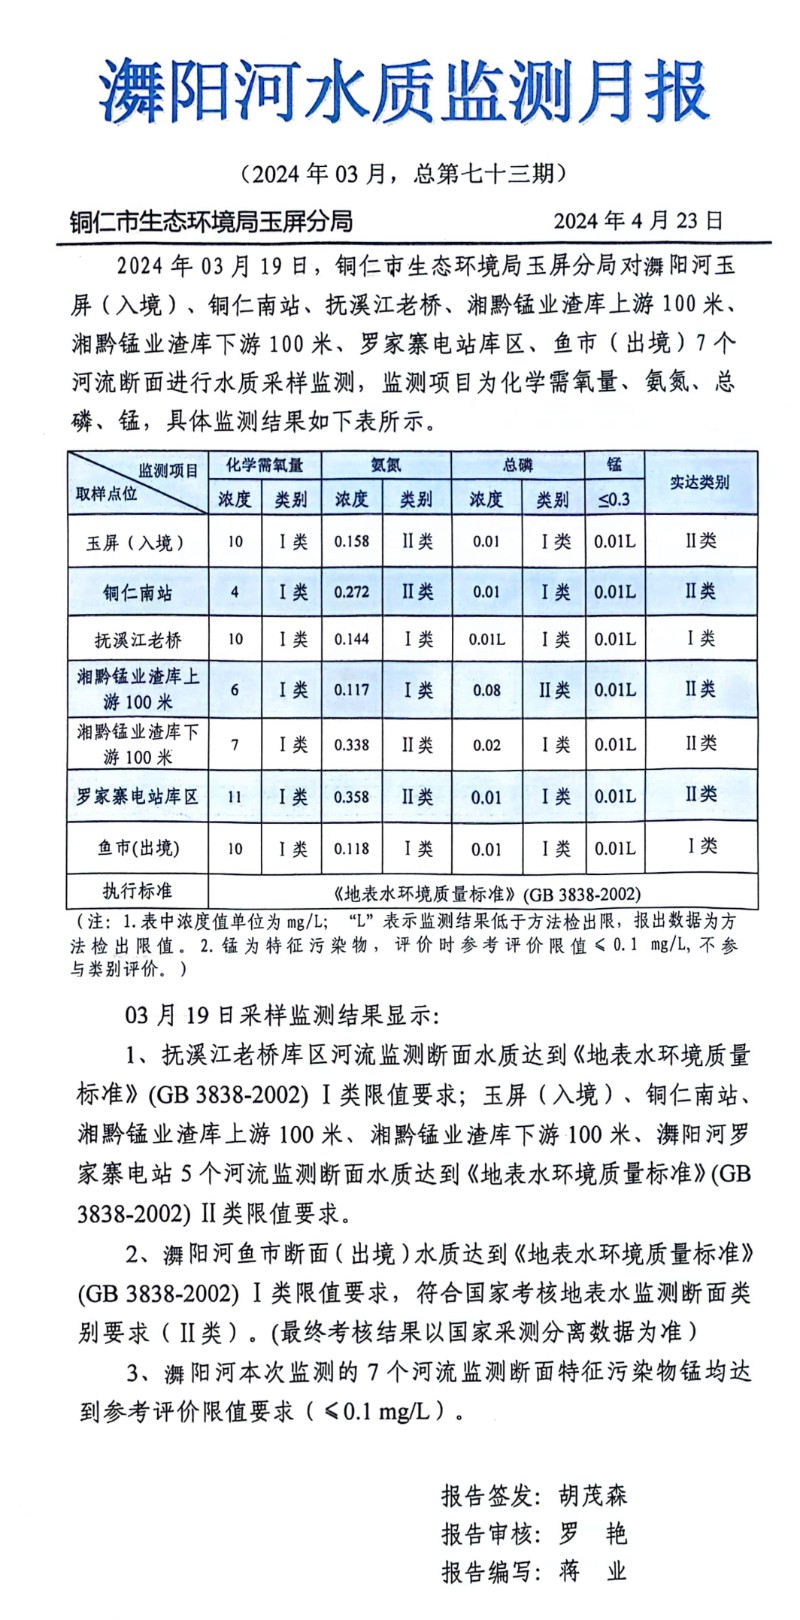 舞阳河水质监测月报(202404)